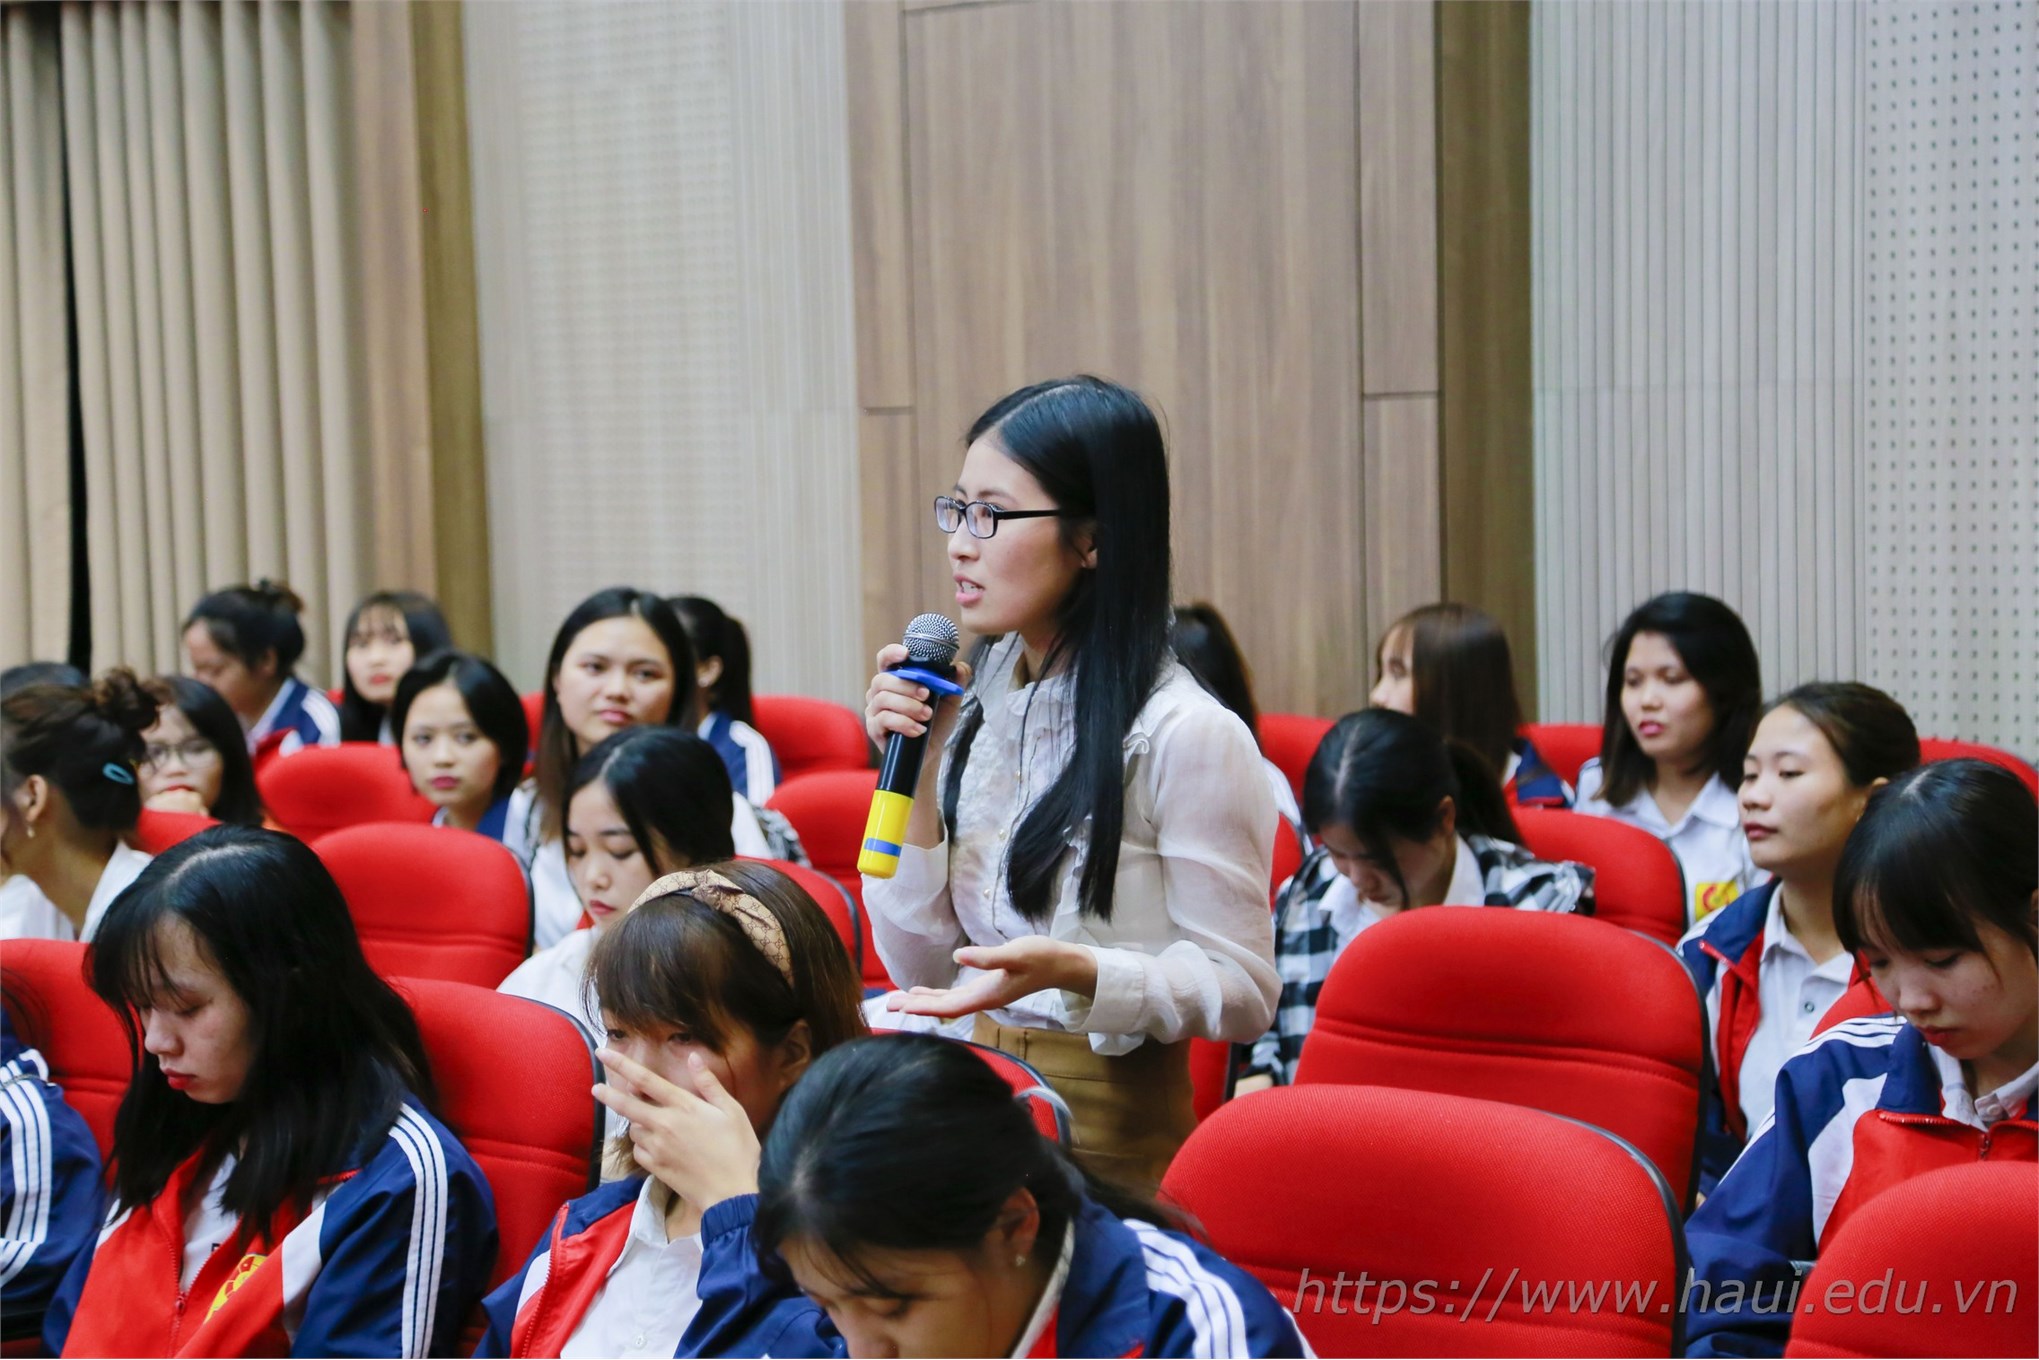 Tọa đàm Doanh nghiệp Dệt, May và Thời trang với sinh viên 2019 tại Đại học Công nghiệp Hà Nội